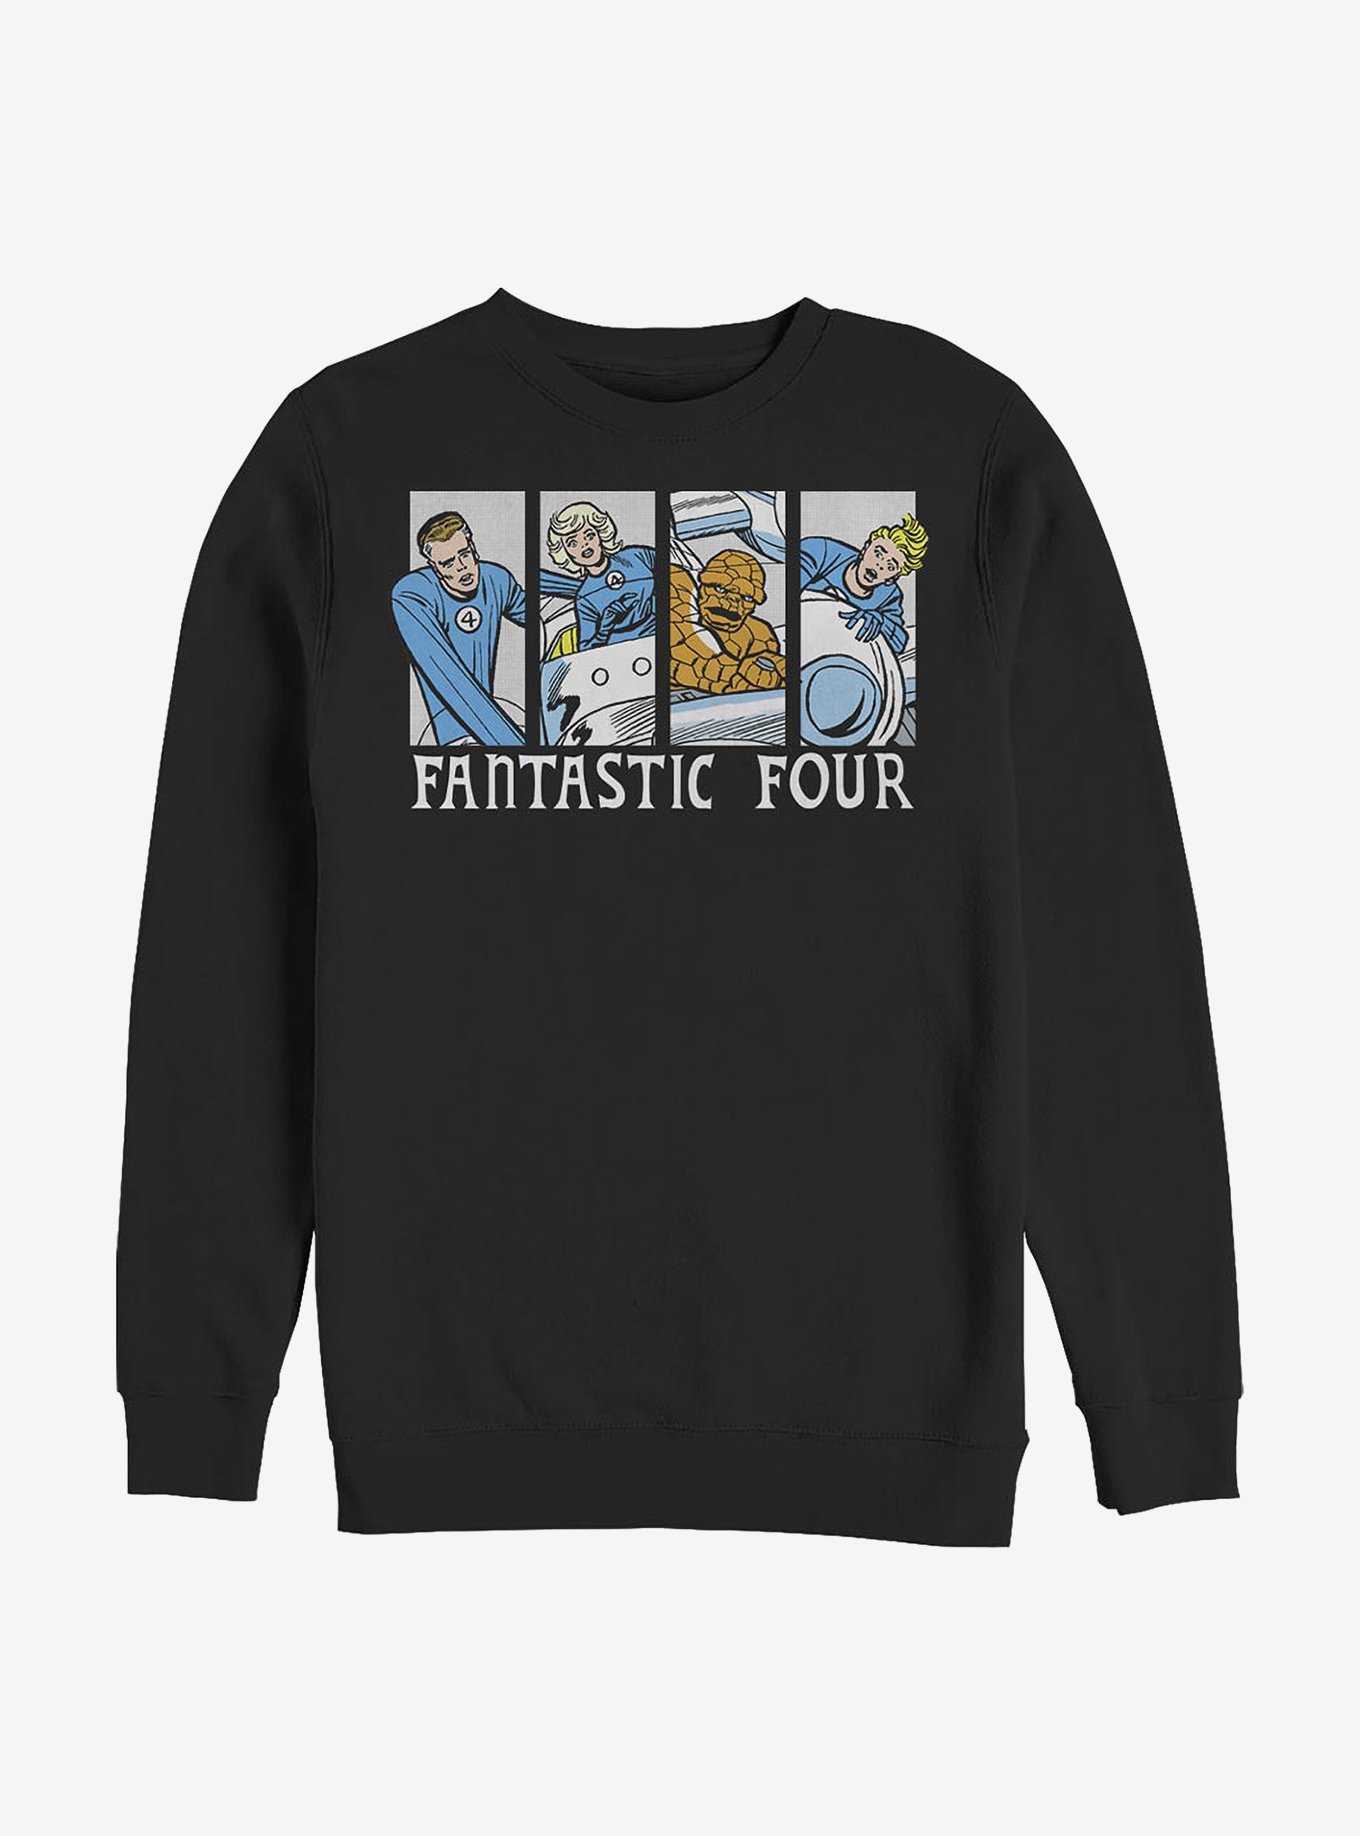 Marvel Fantastic Four Fantastic Comic Crew Sweatshirt, , hi-res